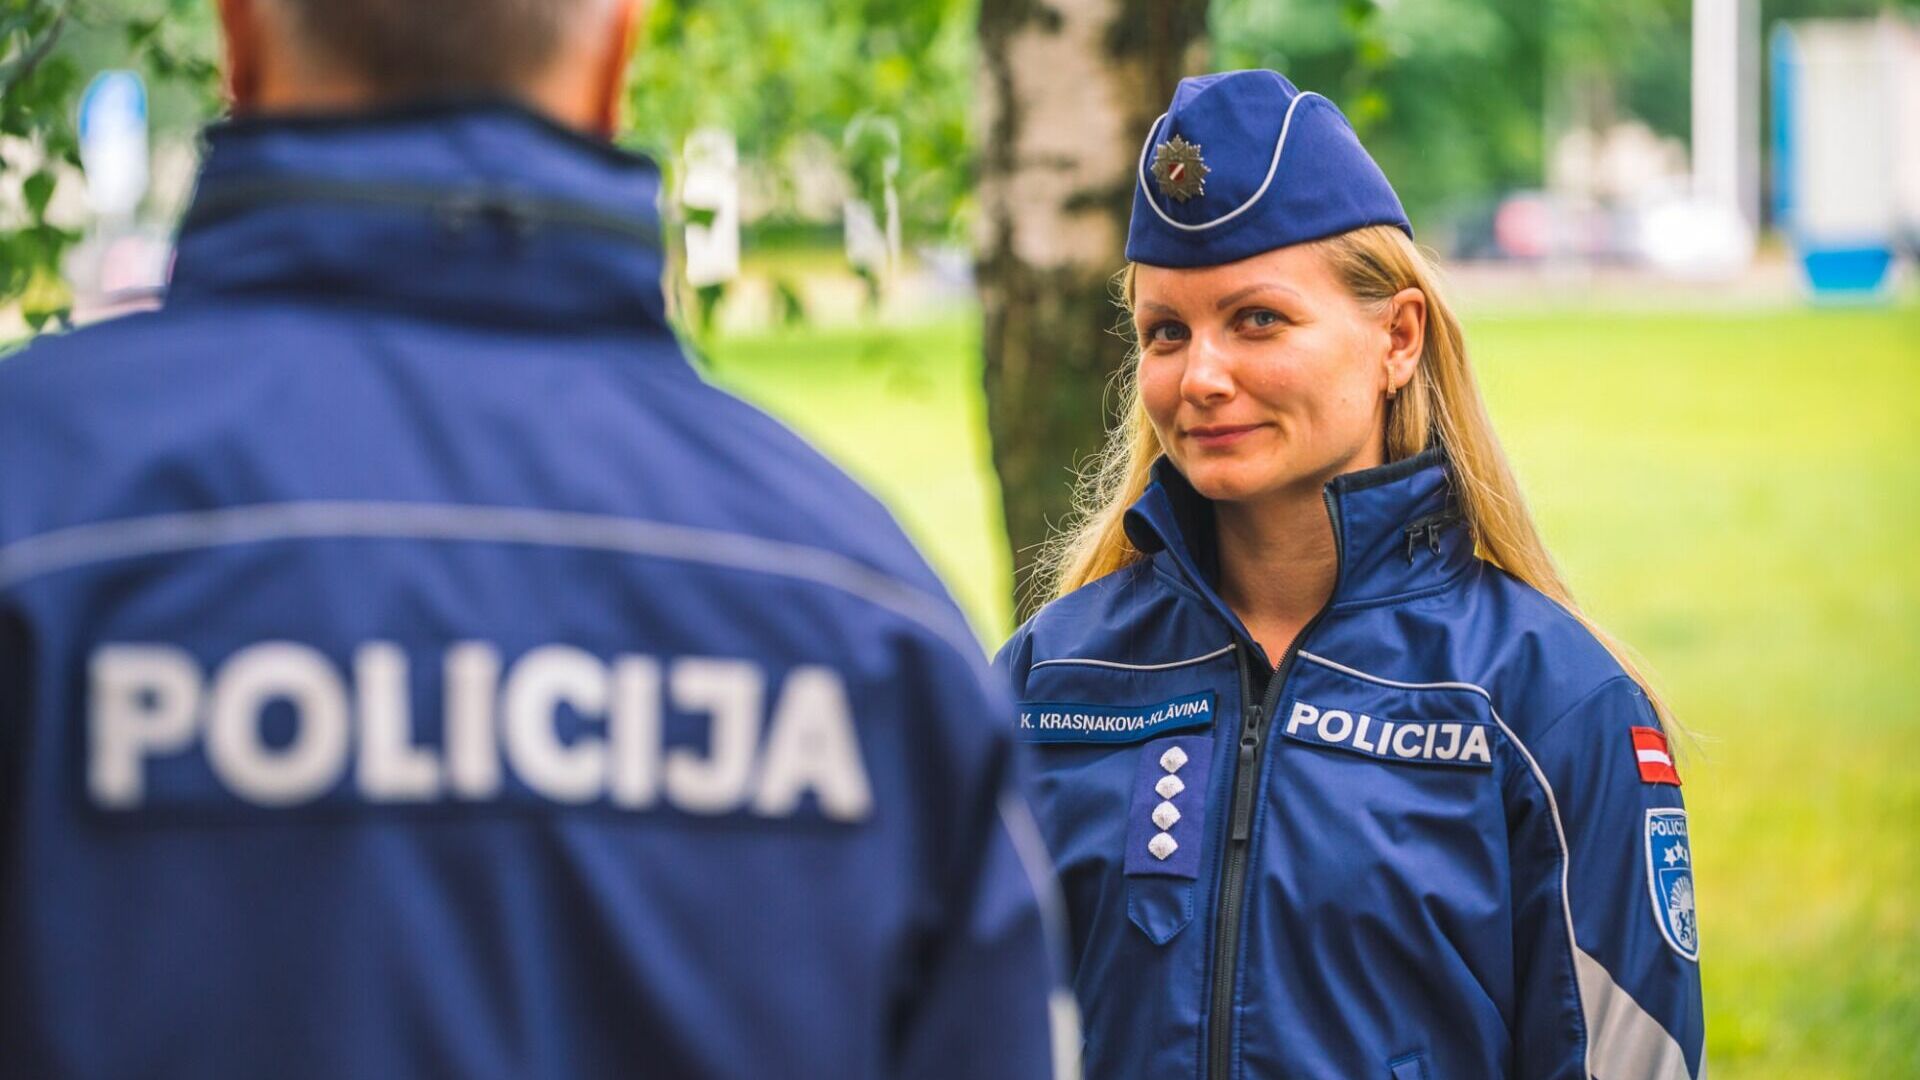 В посольство РФ в Риге вызвали полицию из-за подозрительной посылки